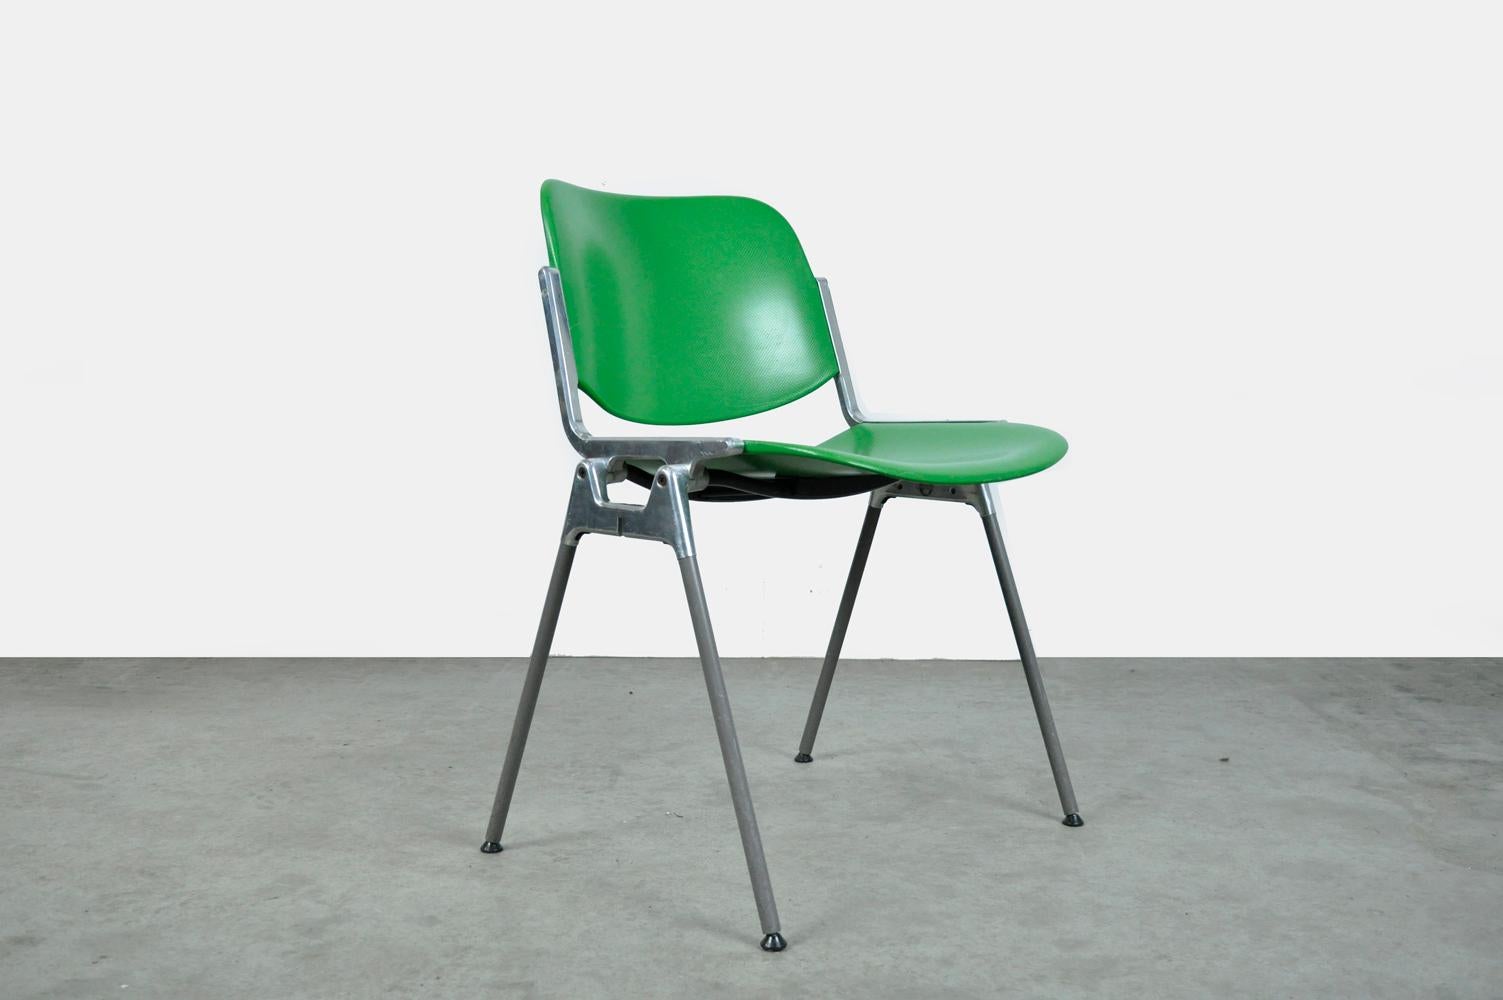 Chaises design, type DSC Axis 106, conçues dans les années 1960 par Giancarlo Piretti pour Castelli, Italie. Les 10 chaises ont un revêtement en plastique vert, un cadre en aluminium, des pieds en acier avec des manchons en plastique gris et des